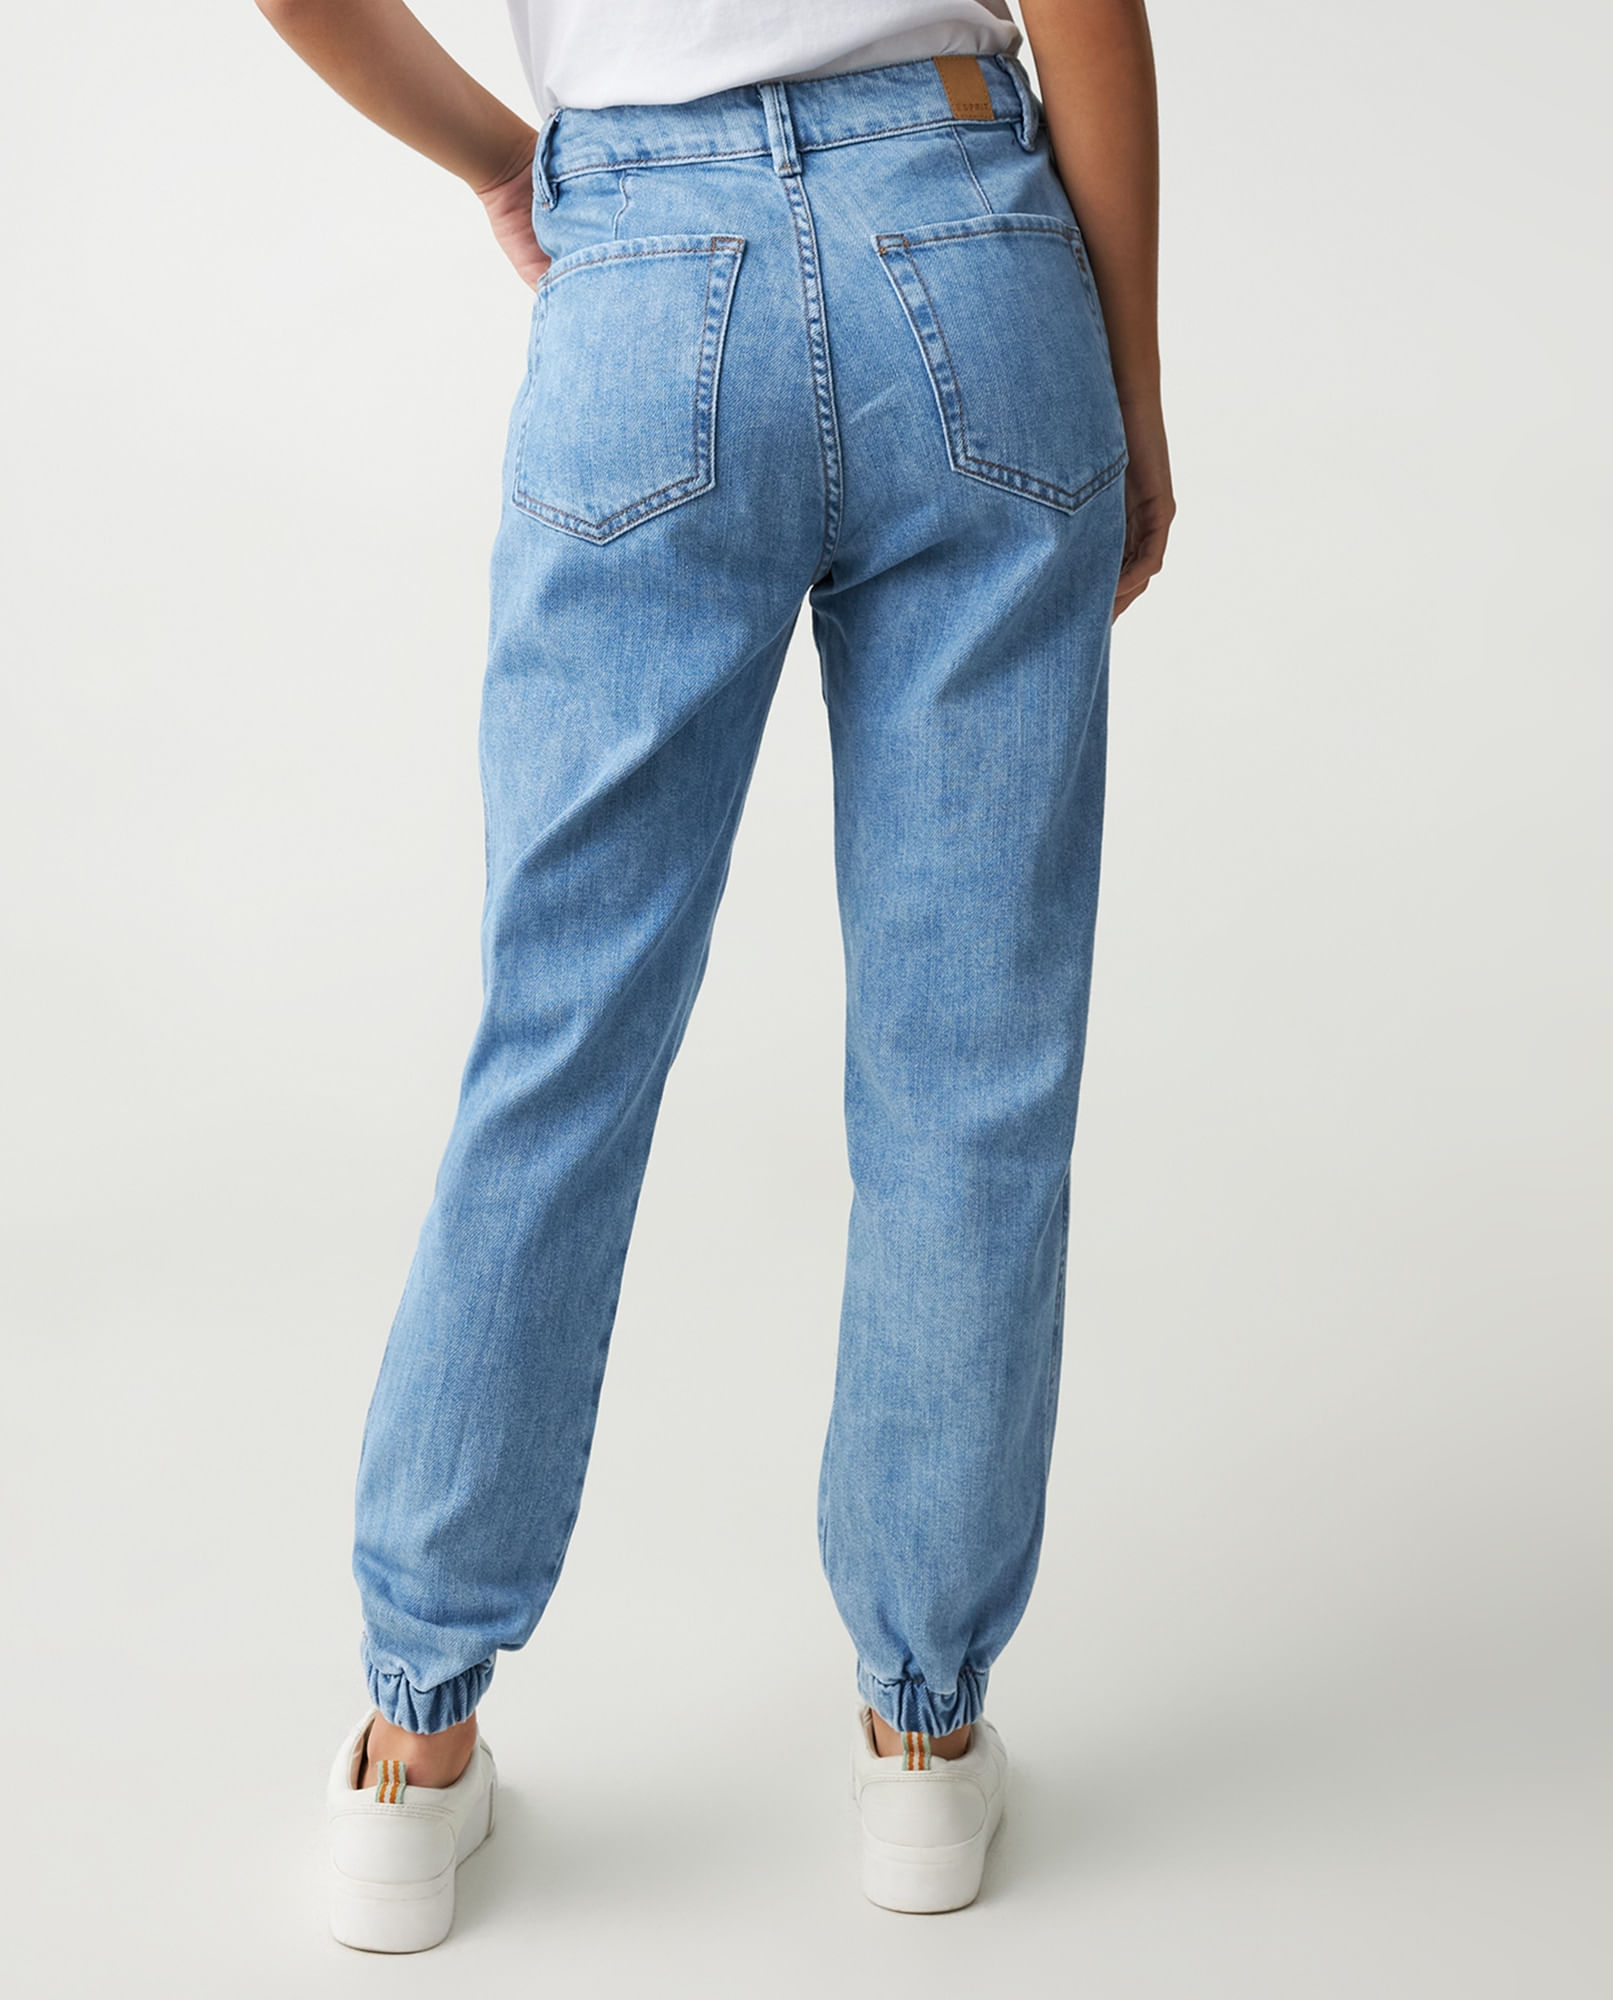 Pantalon Jeans Wideleg Tiro Alto Stretch Para Dama Devendi